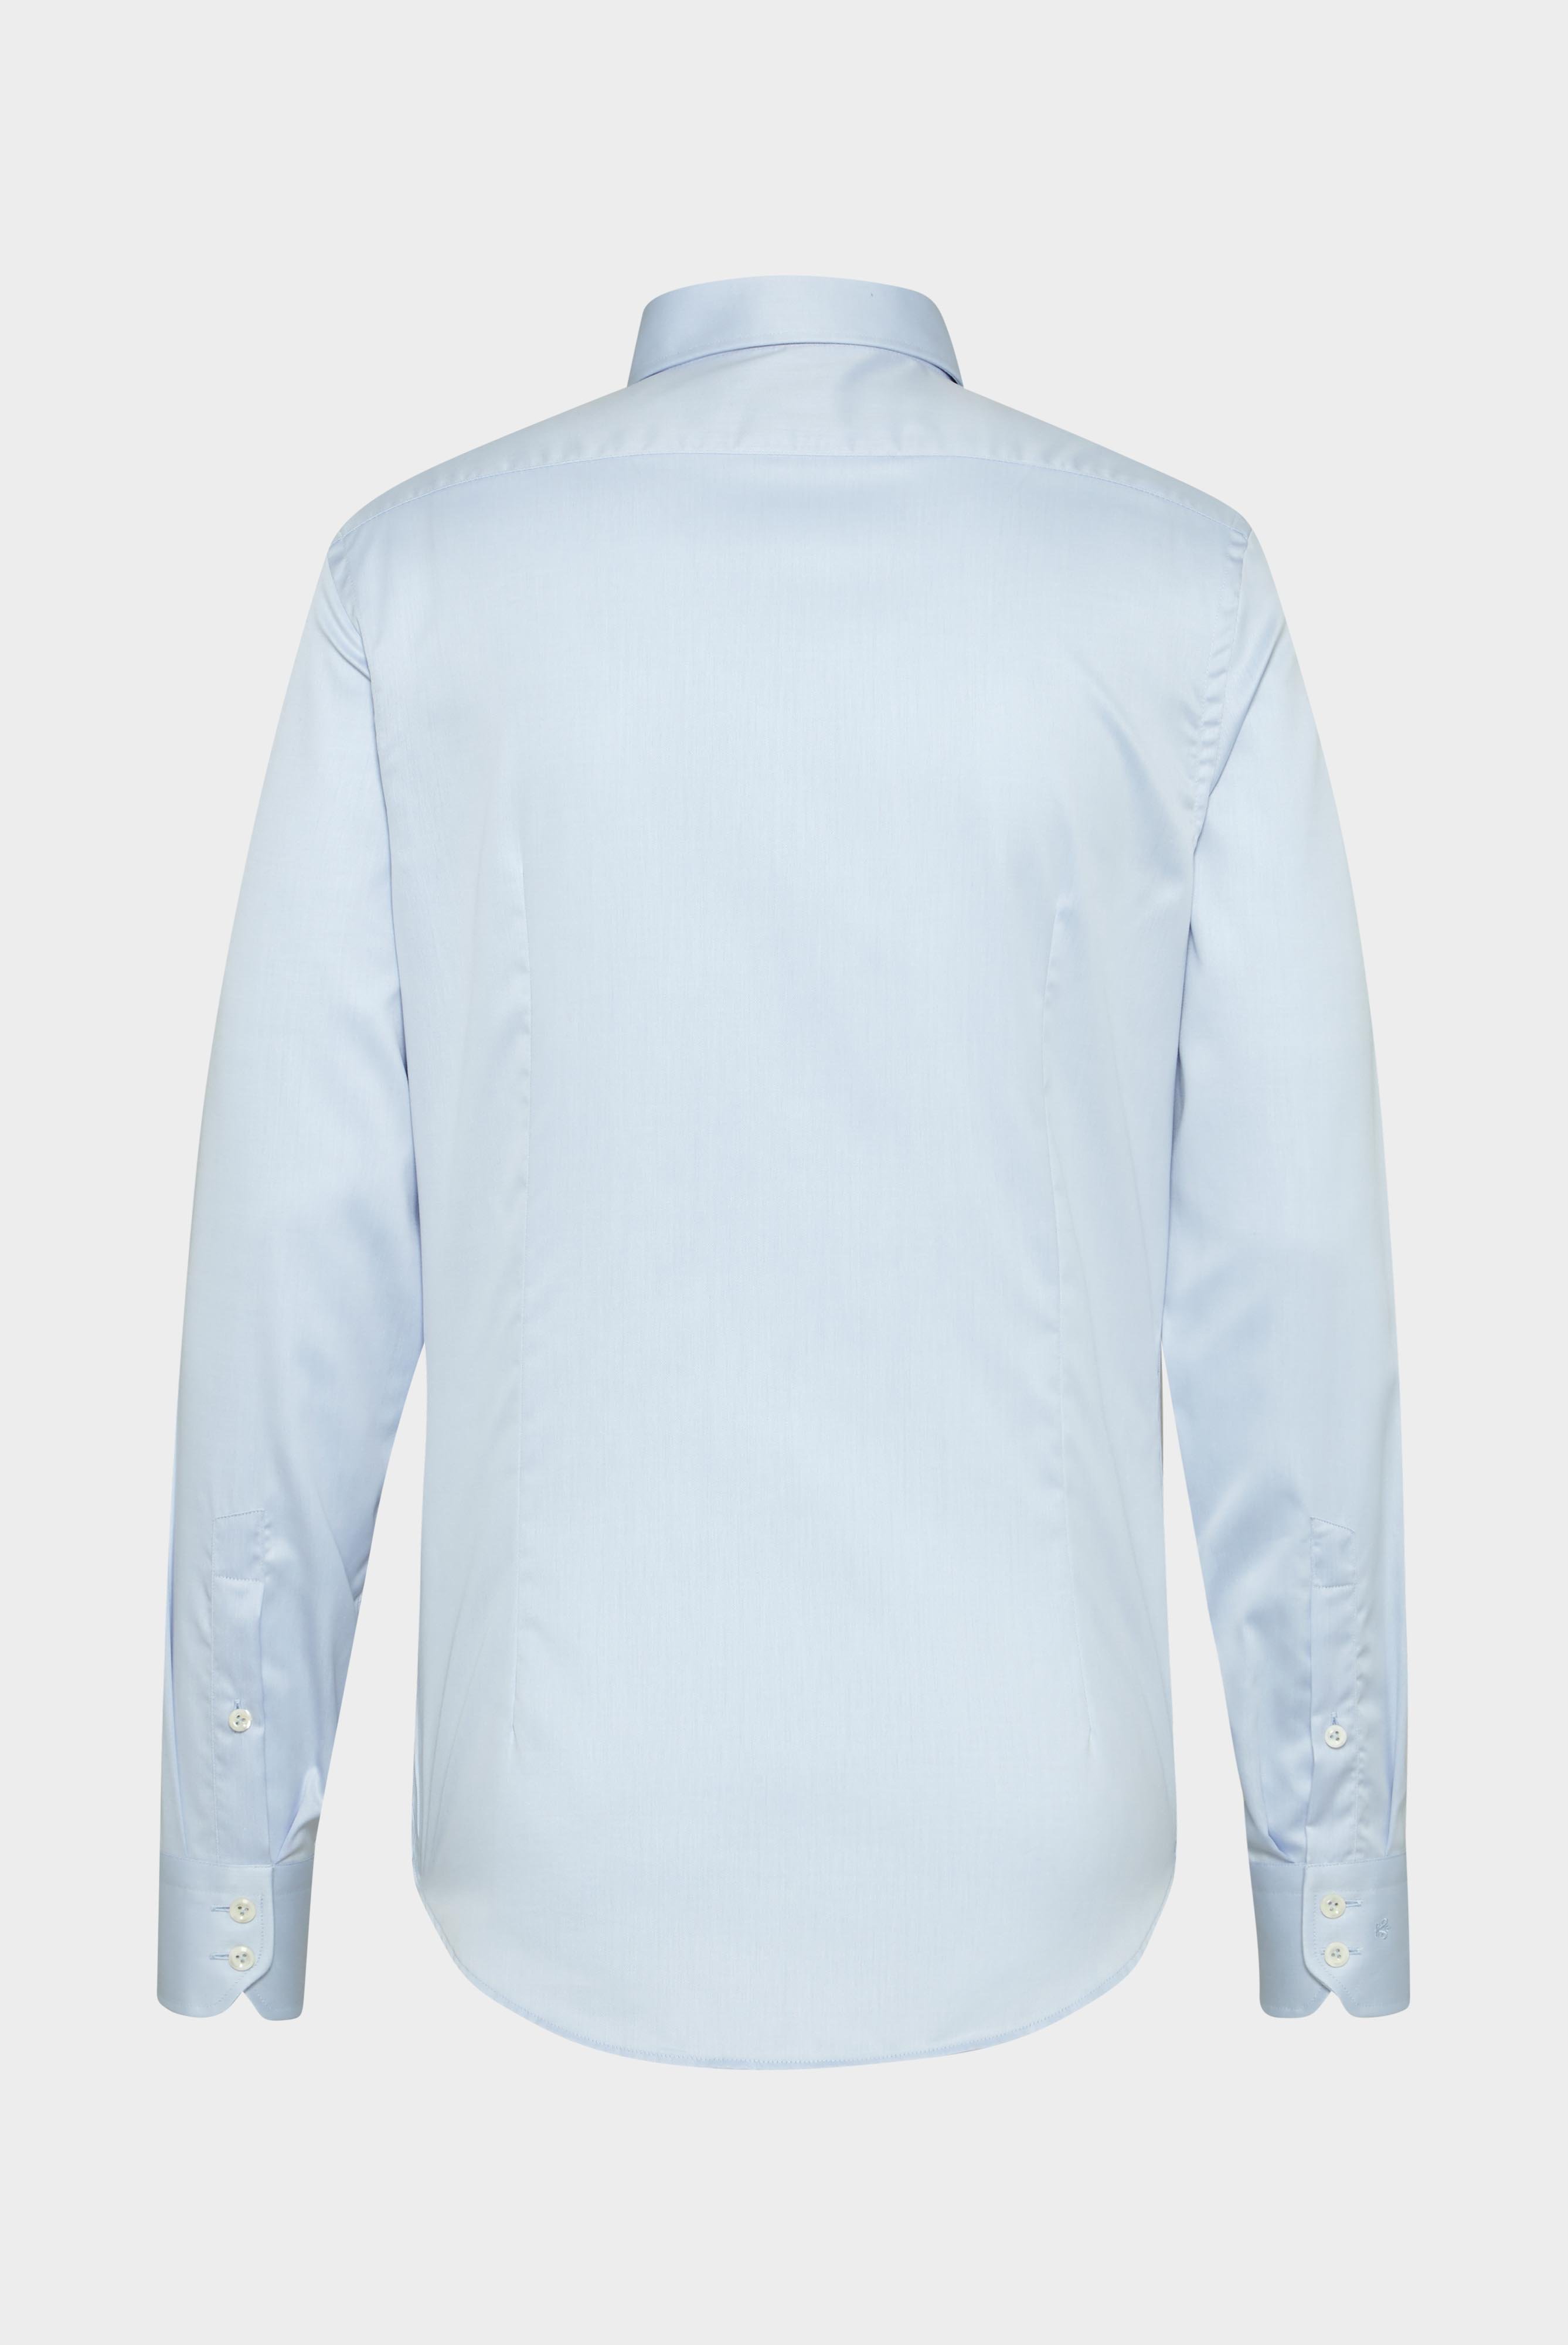 Bügelleichte Hemden+Bügelfreies Twill Hemd Slim Fit+20.2019.BQ.132241.720.44